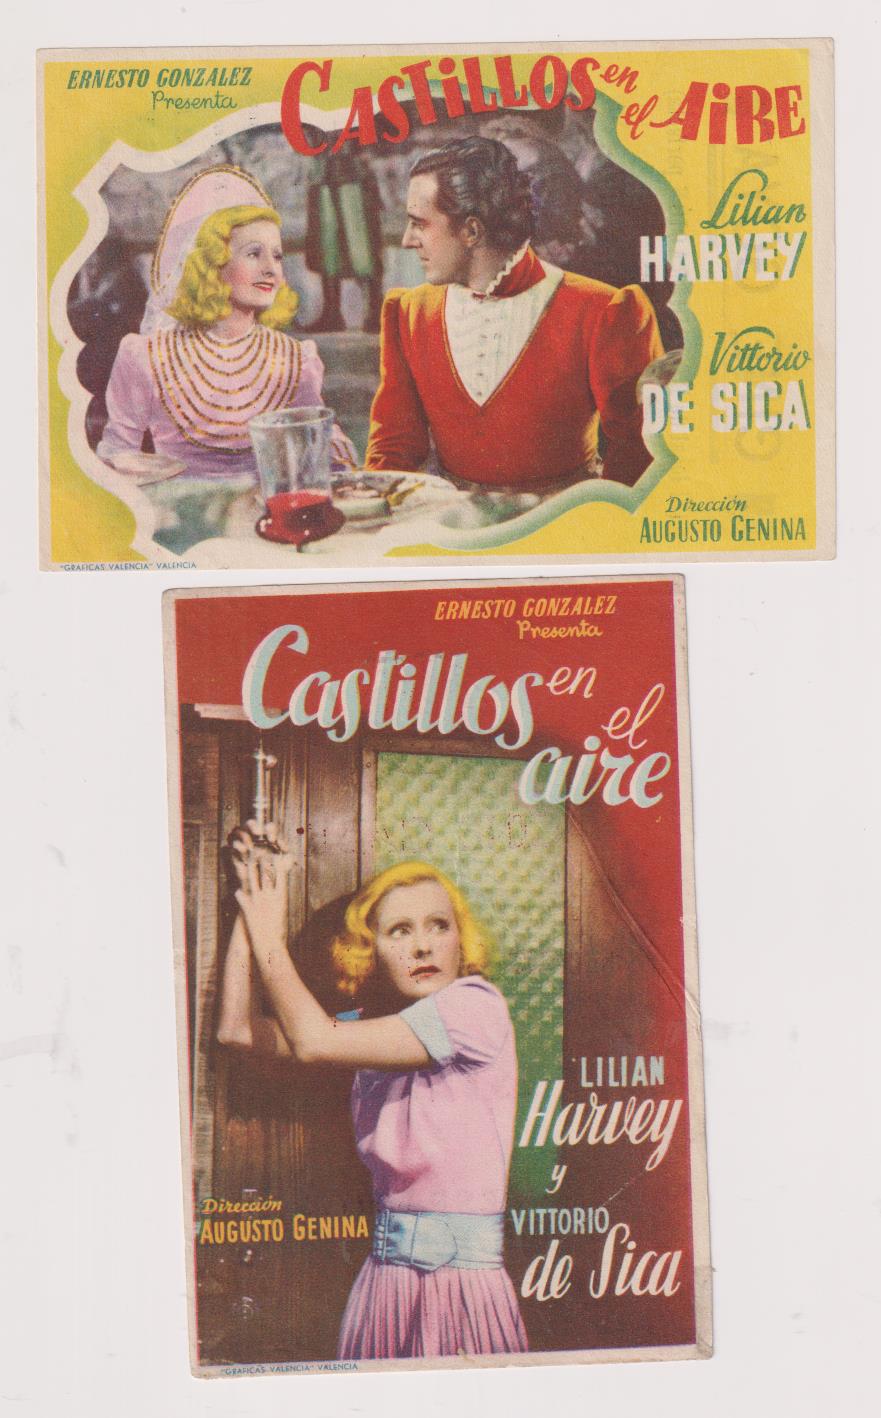 Castillos en el aire. Lote de 2 Programas de E. González. Cine Goya y Cine Cádiz, 1944